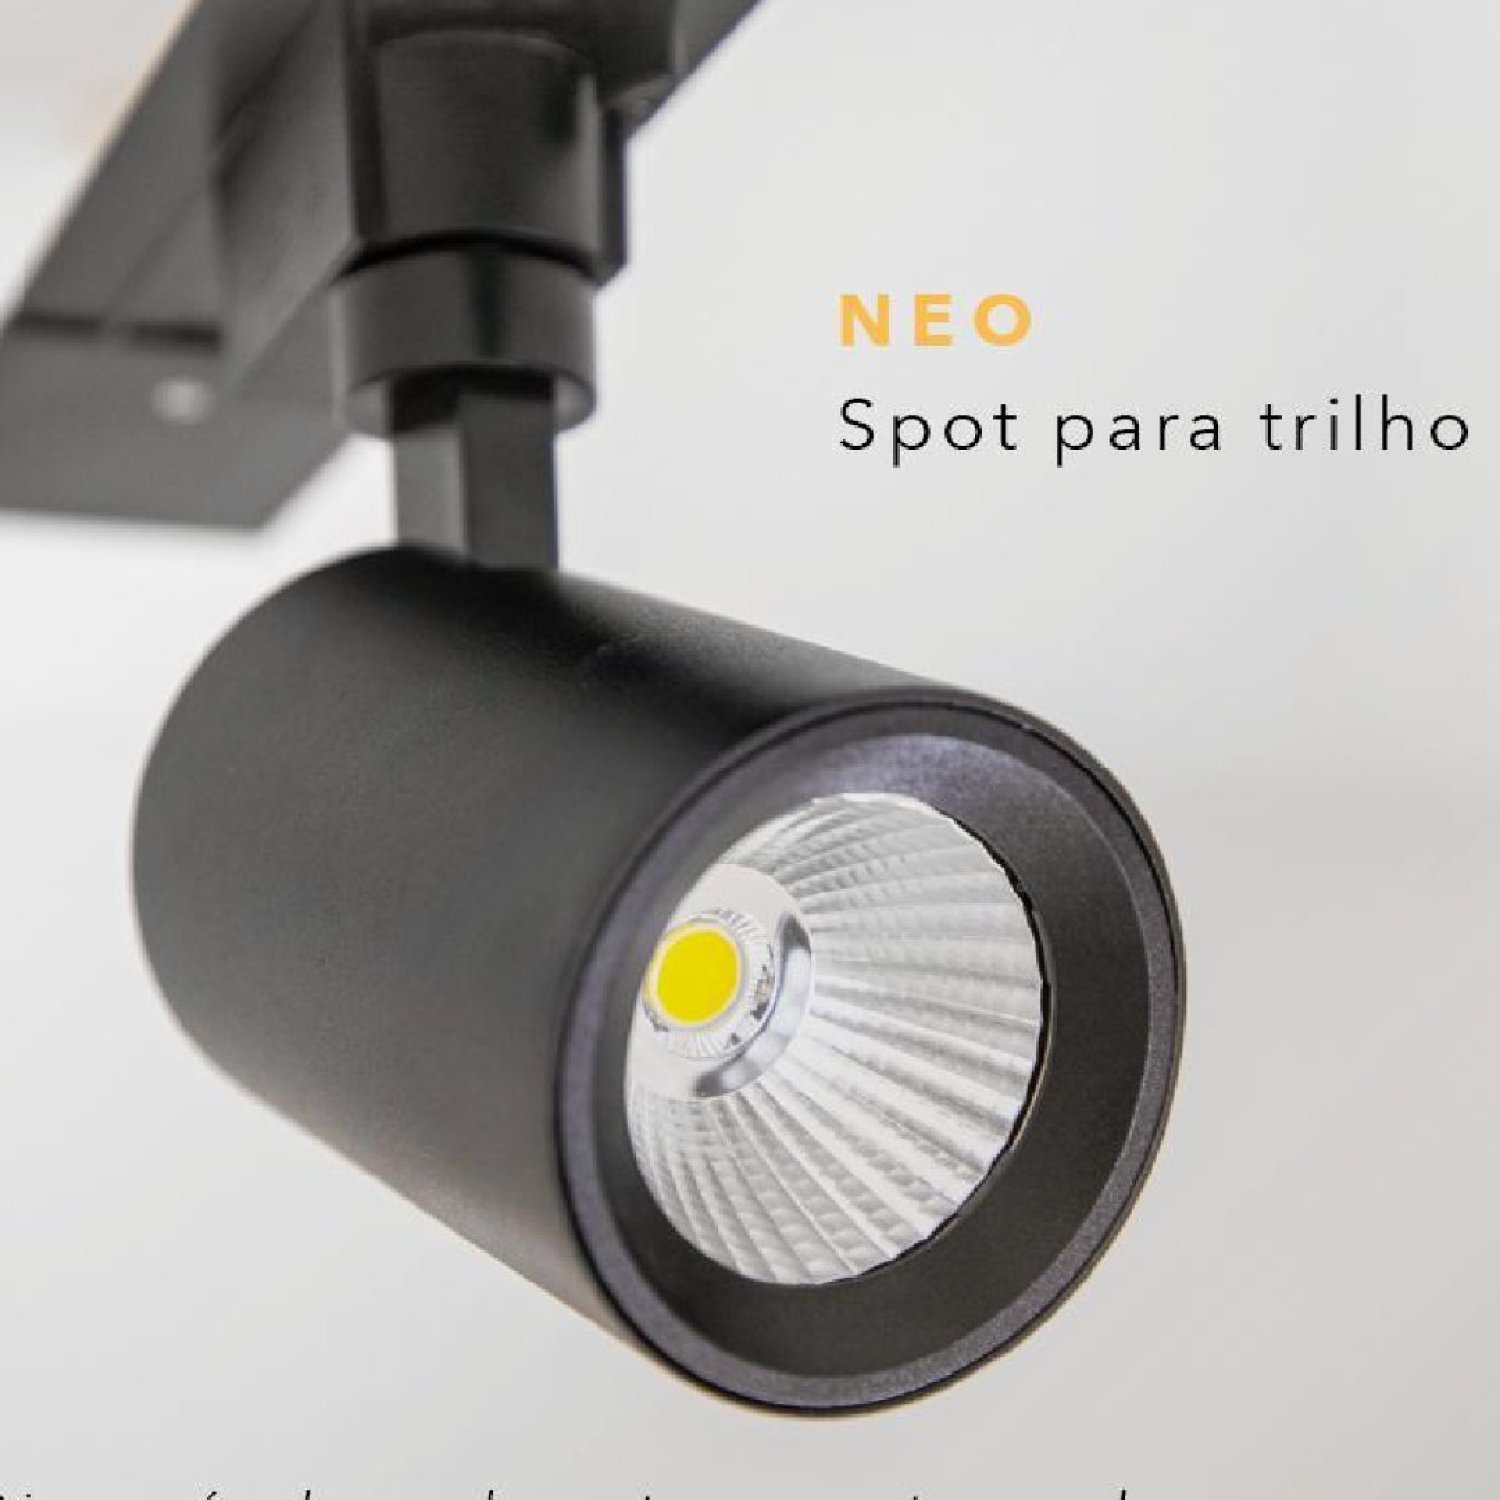 Spot para Trilho Neo (d)6.9cm (l)10cm (a)14.2cm 1x10w 2700k 850lm - 4